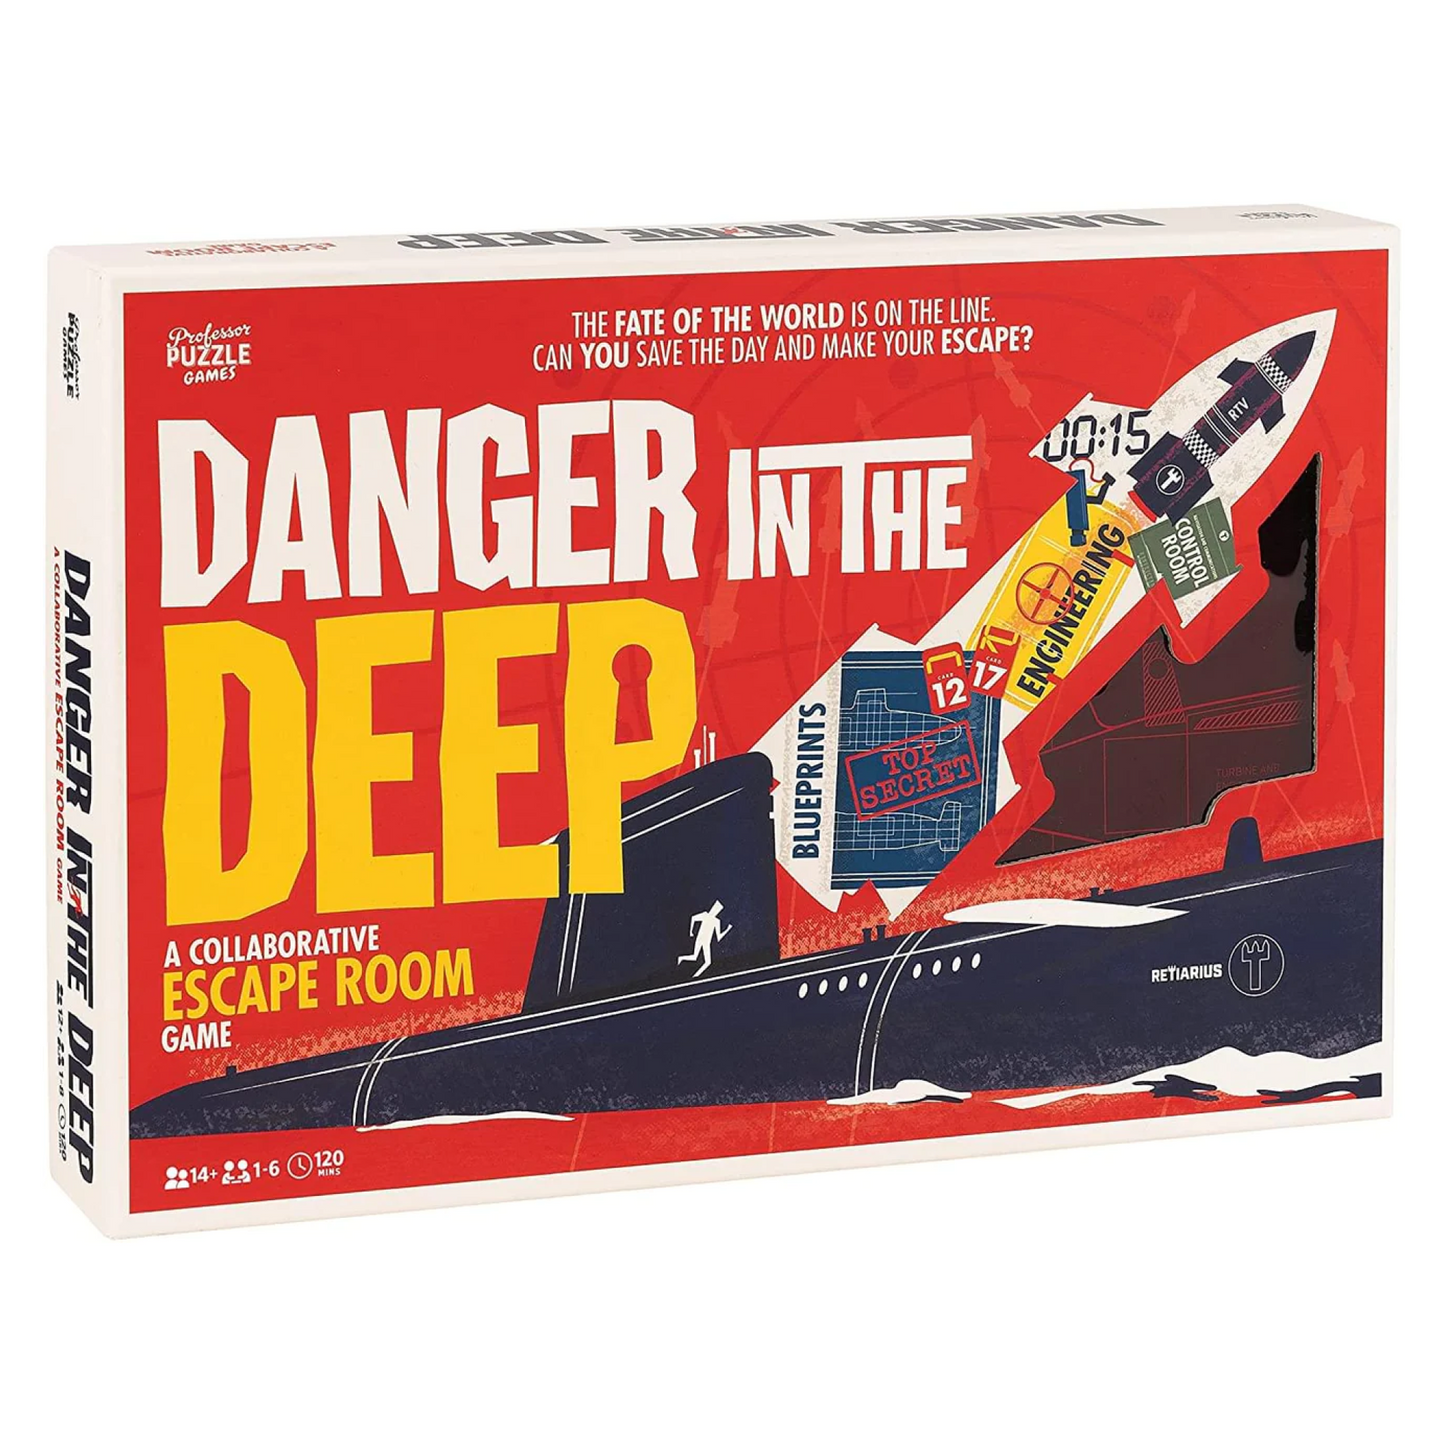 Danger In The Deep